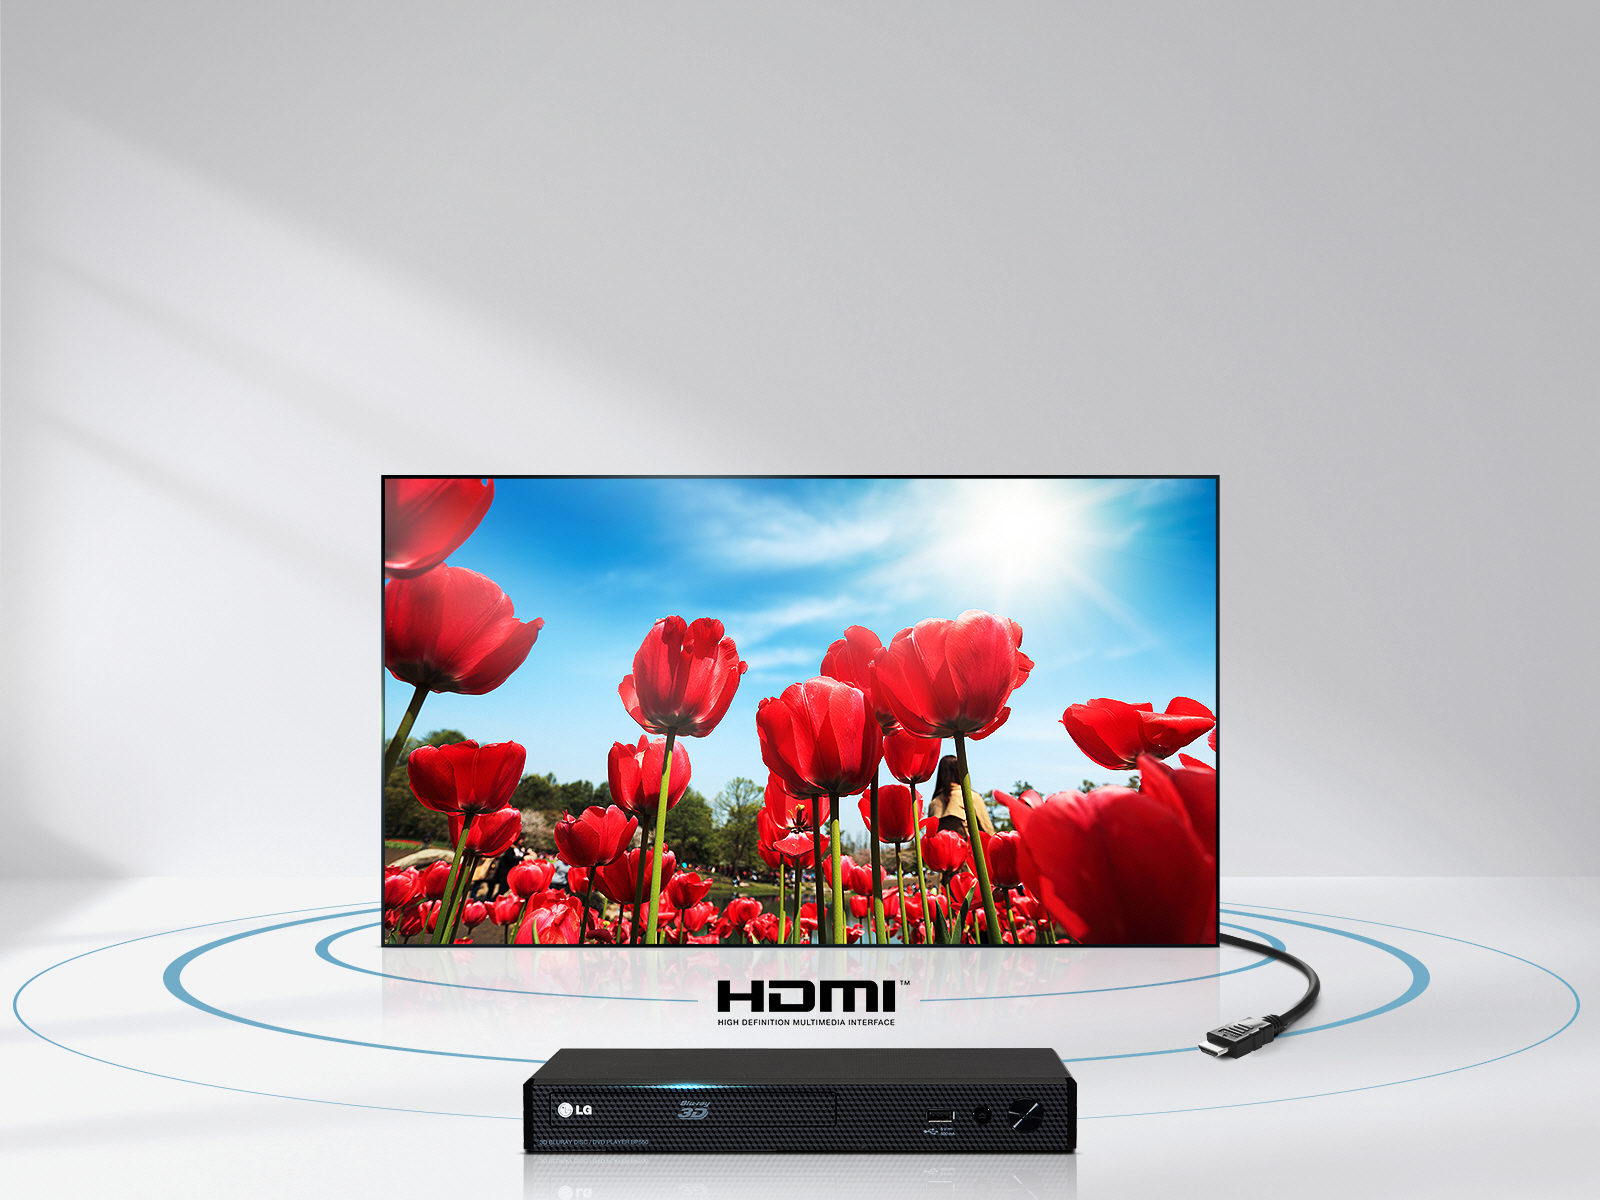 کاربرد HDMI در تلویزیون ال جی 32LJ610